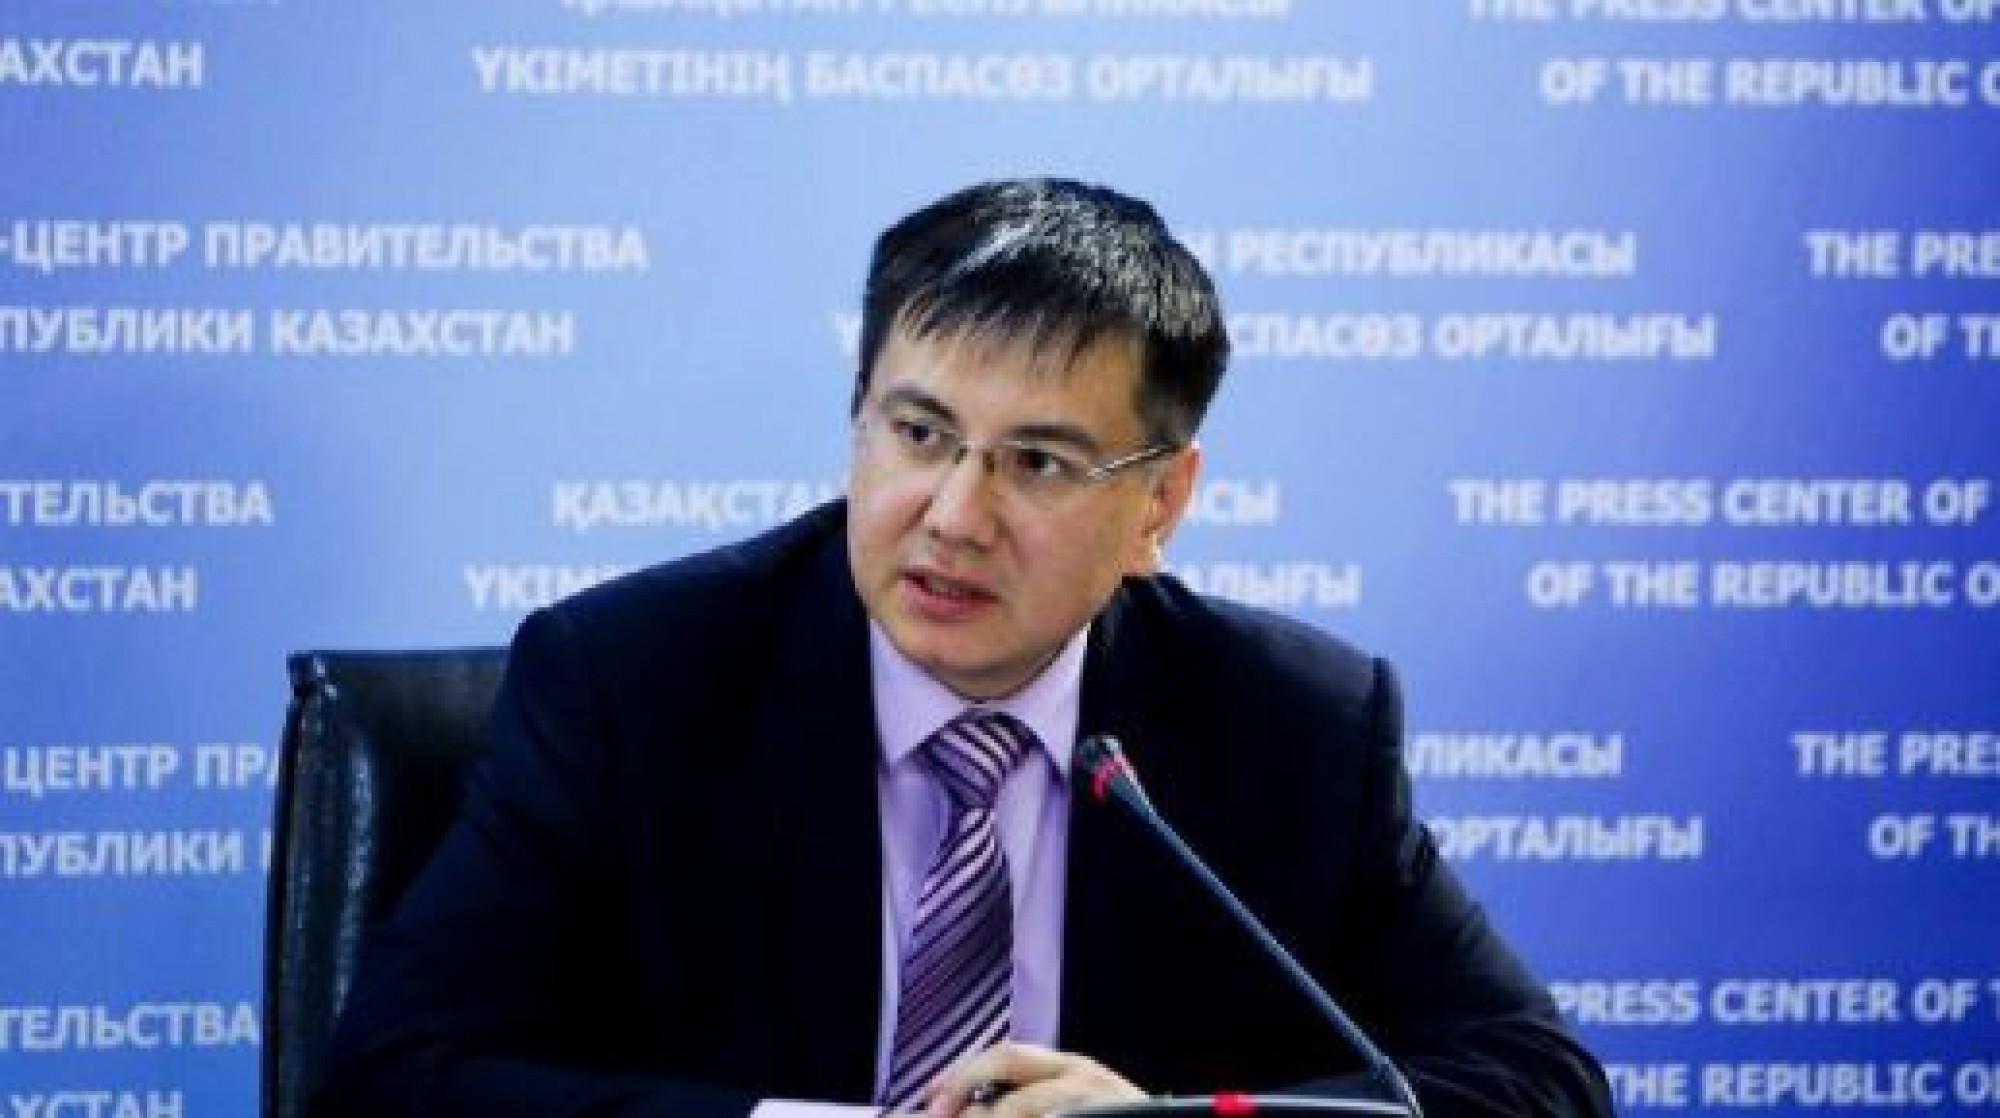 Rustem Kurmanov relieved as chairman of KazAGRO